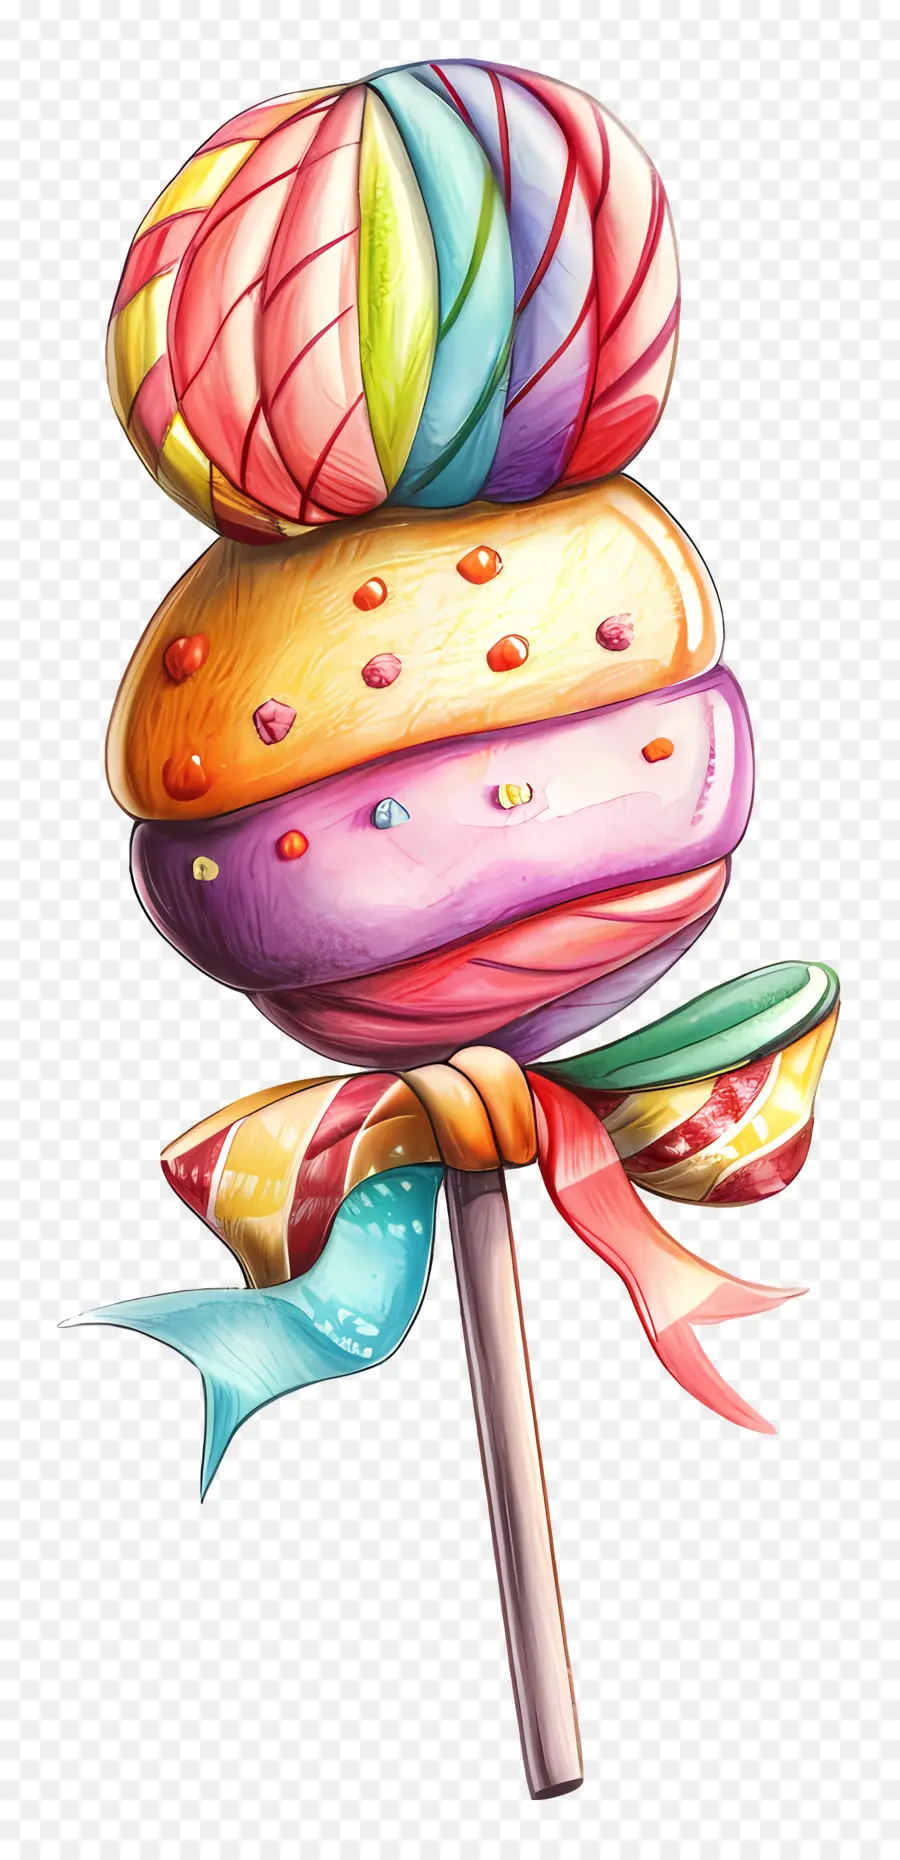 Streusel - Lebendiges, verspieltes Bild des farbenfrohen Lollipops